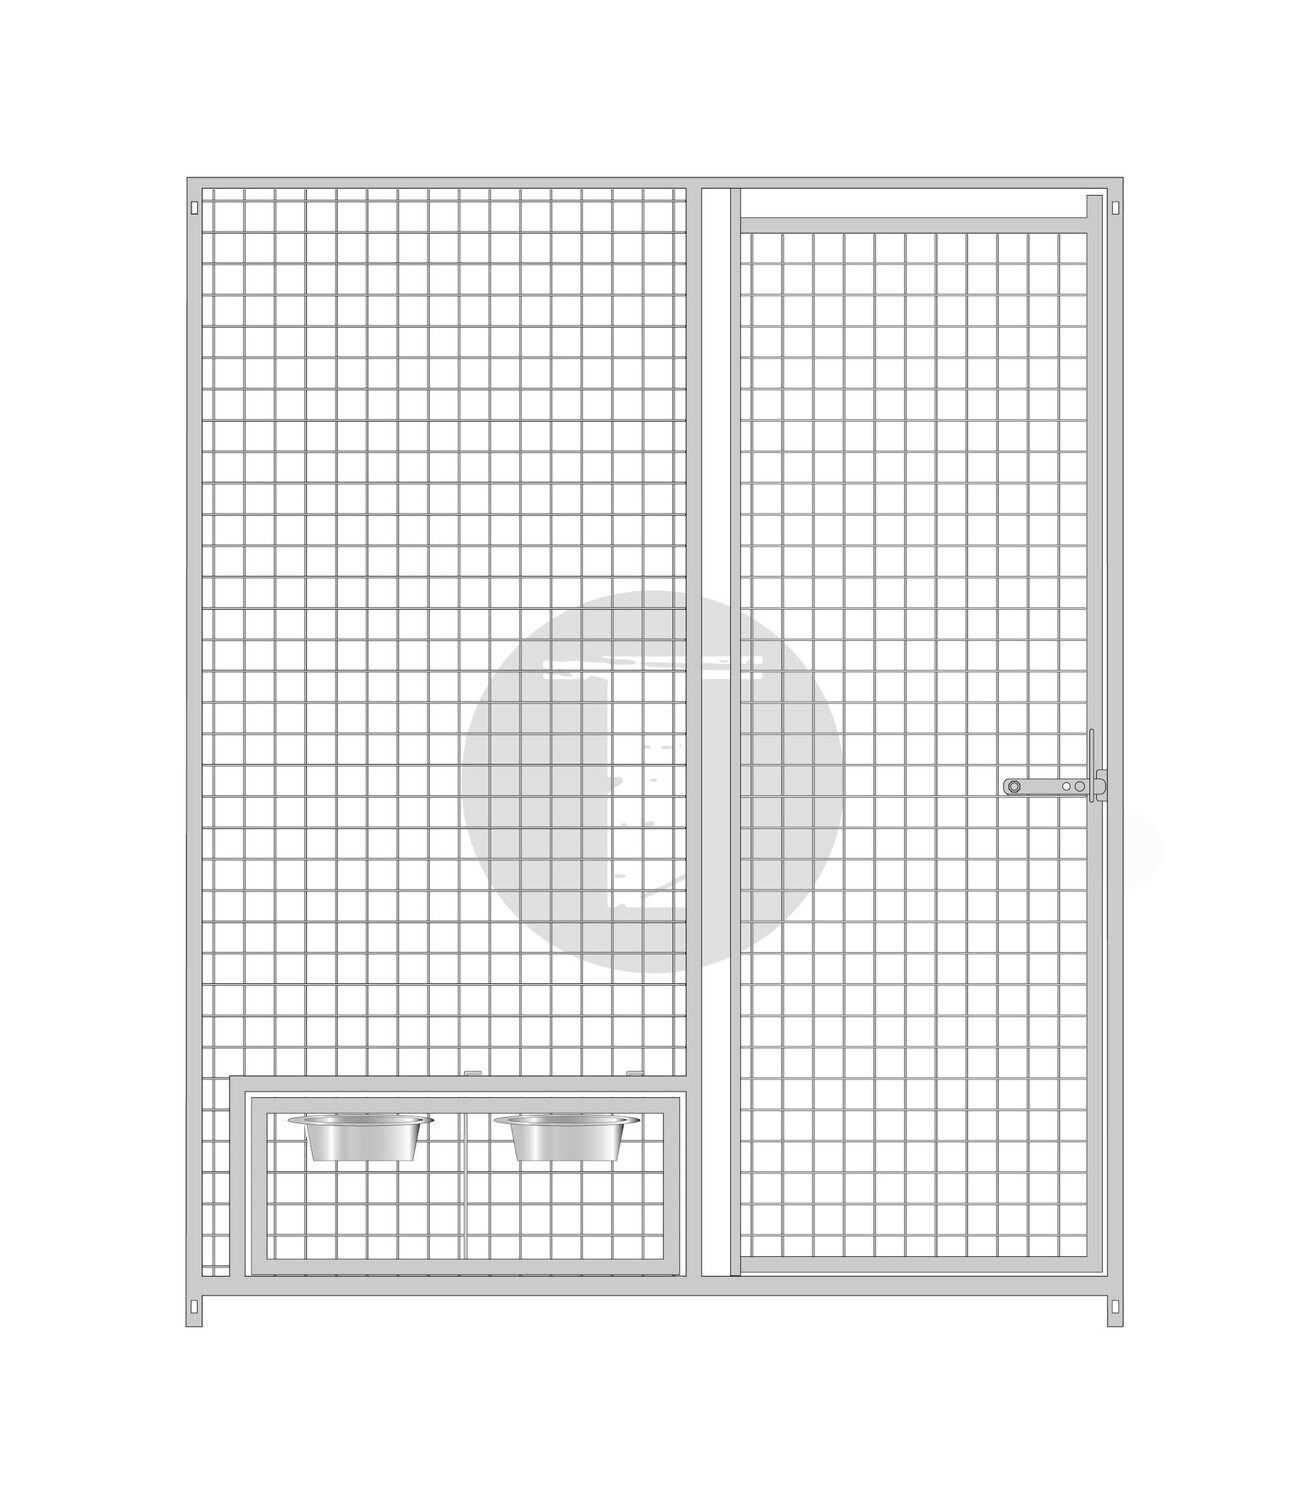 Gitterelement Tür rechts und schwenkbarem Futterset 5 x 5 cm - 184 cm hoch, Länge: 150cm